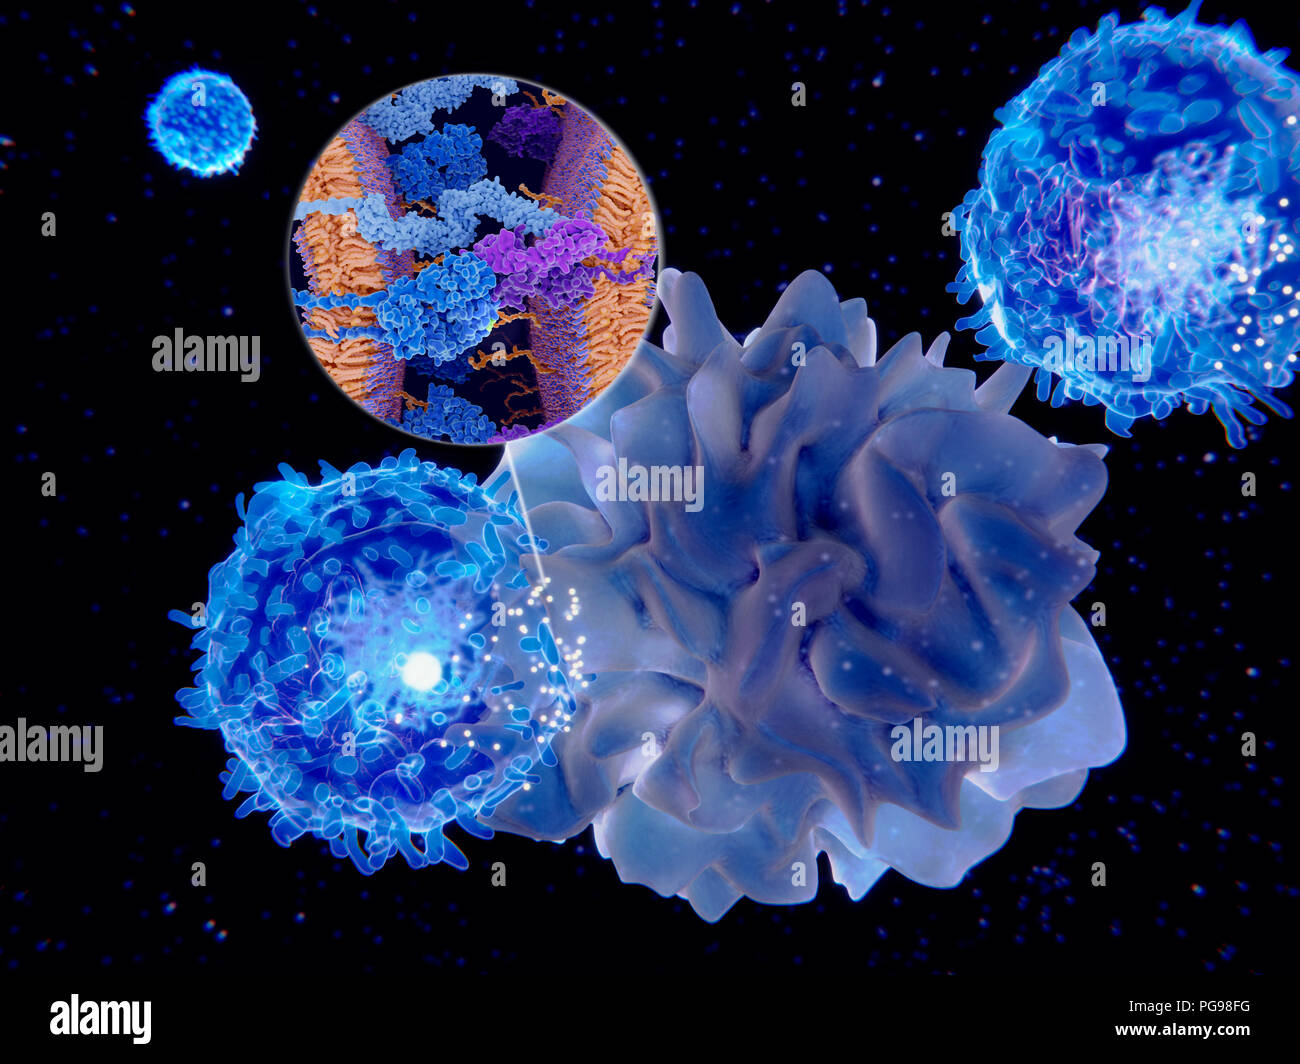 Immunantwort Aktivierung. Abbildung: Antigen-präsentierenden Zelle Aktivität. Dendritische Zellen (hell blau) dargestellt, die Antigene zu einem lymphoc Stockfoto